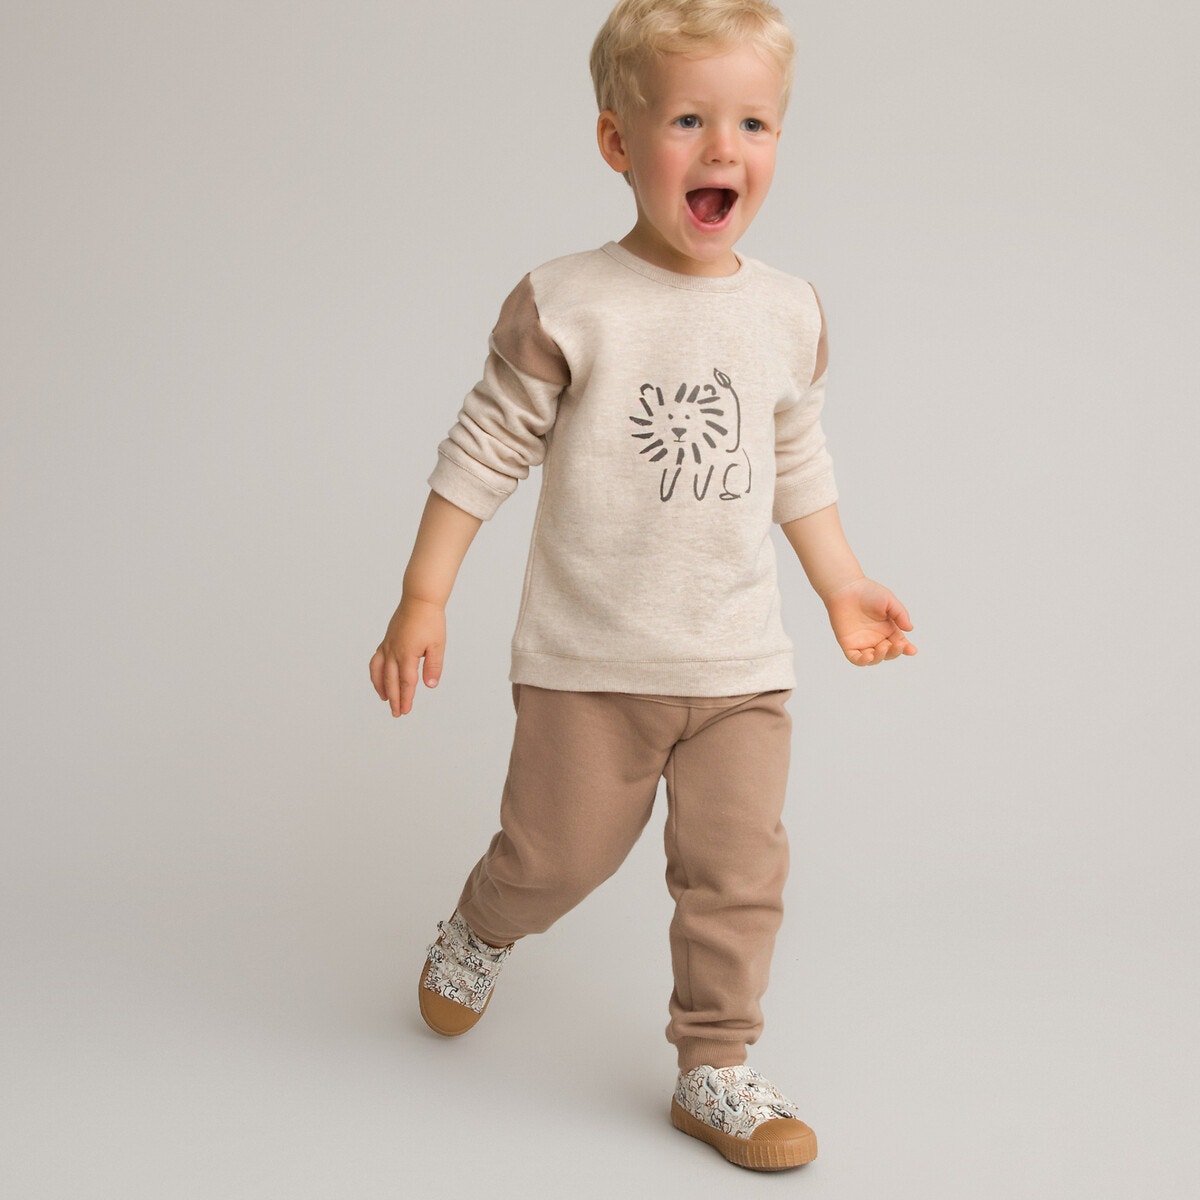 ΠΑΙΔΙ | Παντελόνια Φανελένιο σύνολο με φούτερ και παντελόνι από οργανικό βαμβάκι, 1 μηνός - 3 ετών